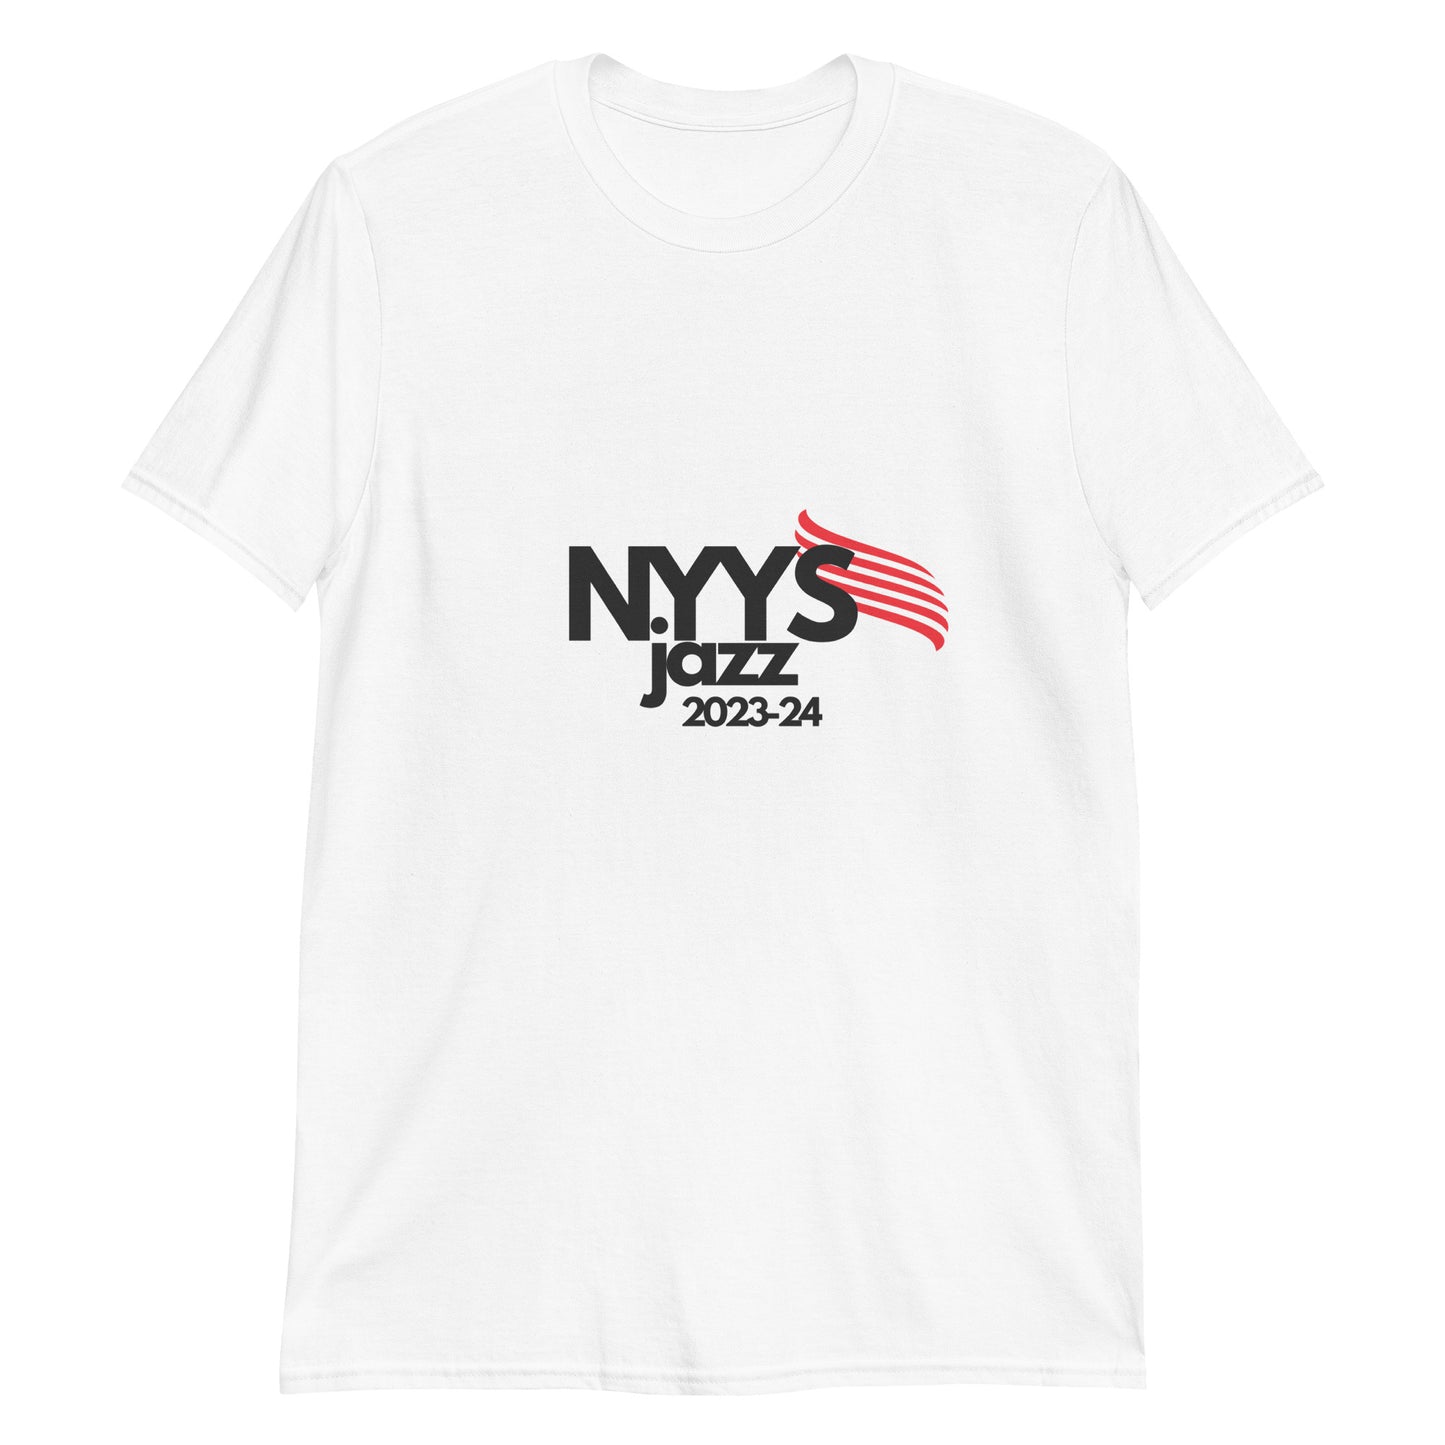 NYYS Jazz Short-Sleeve Unisex T-Shirt